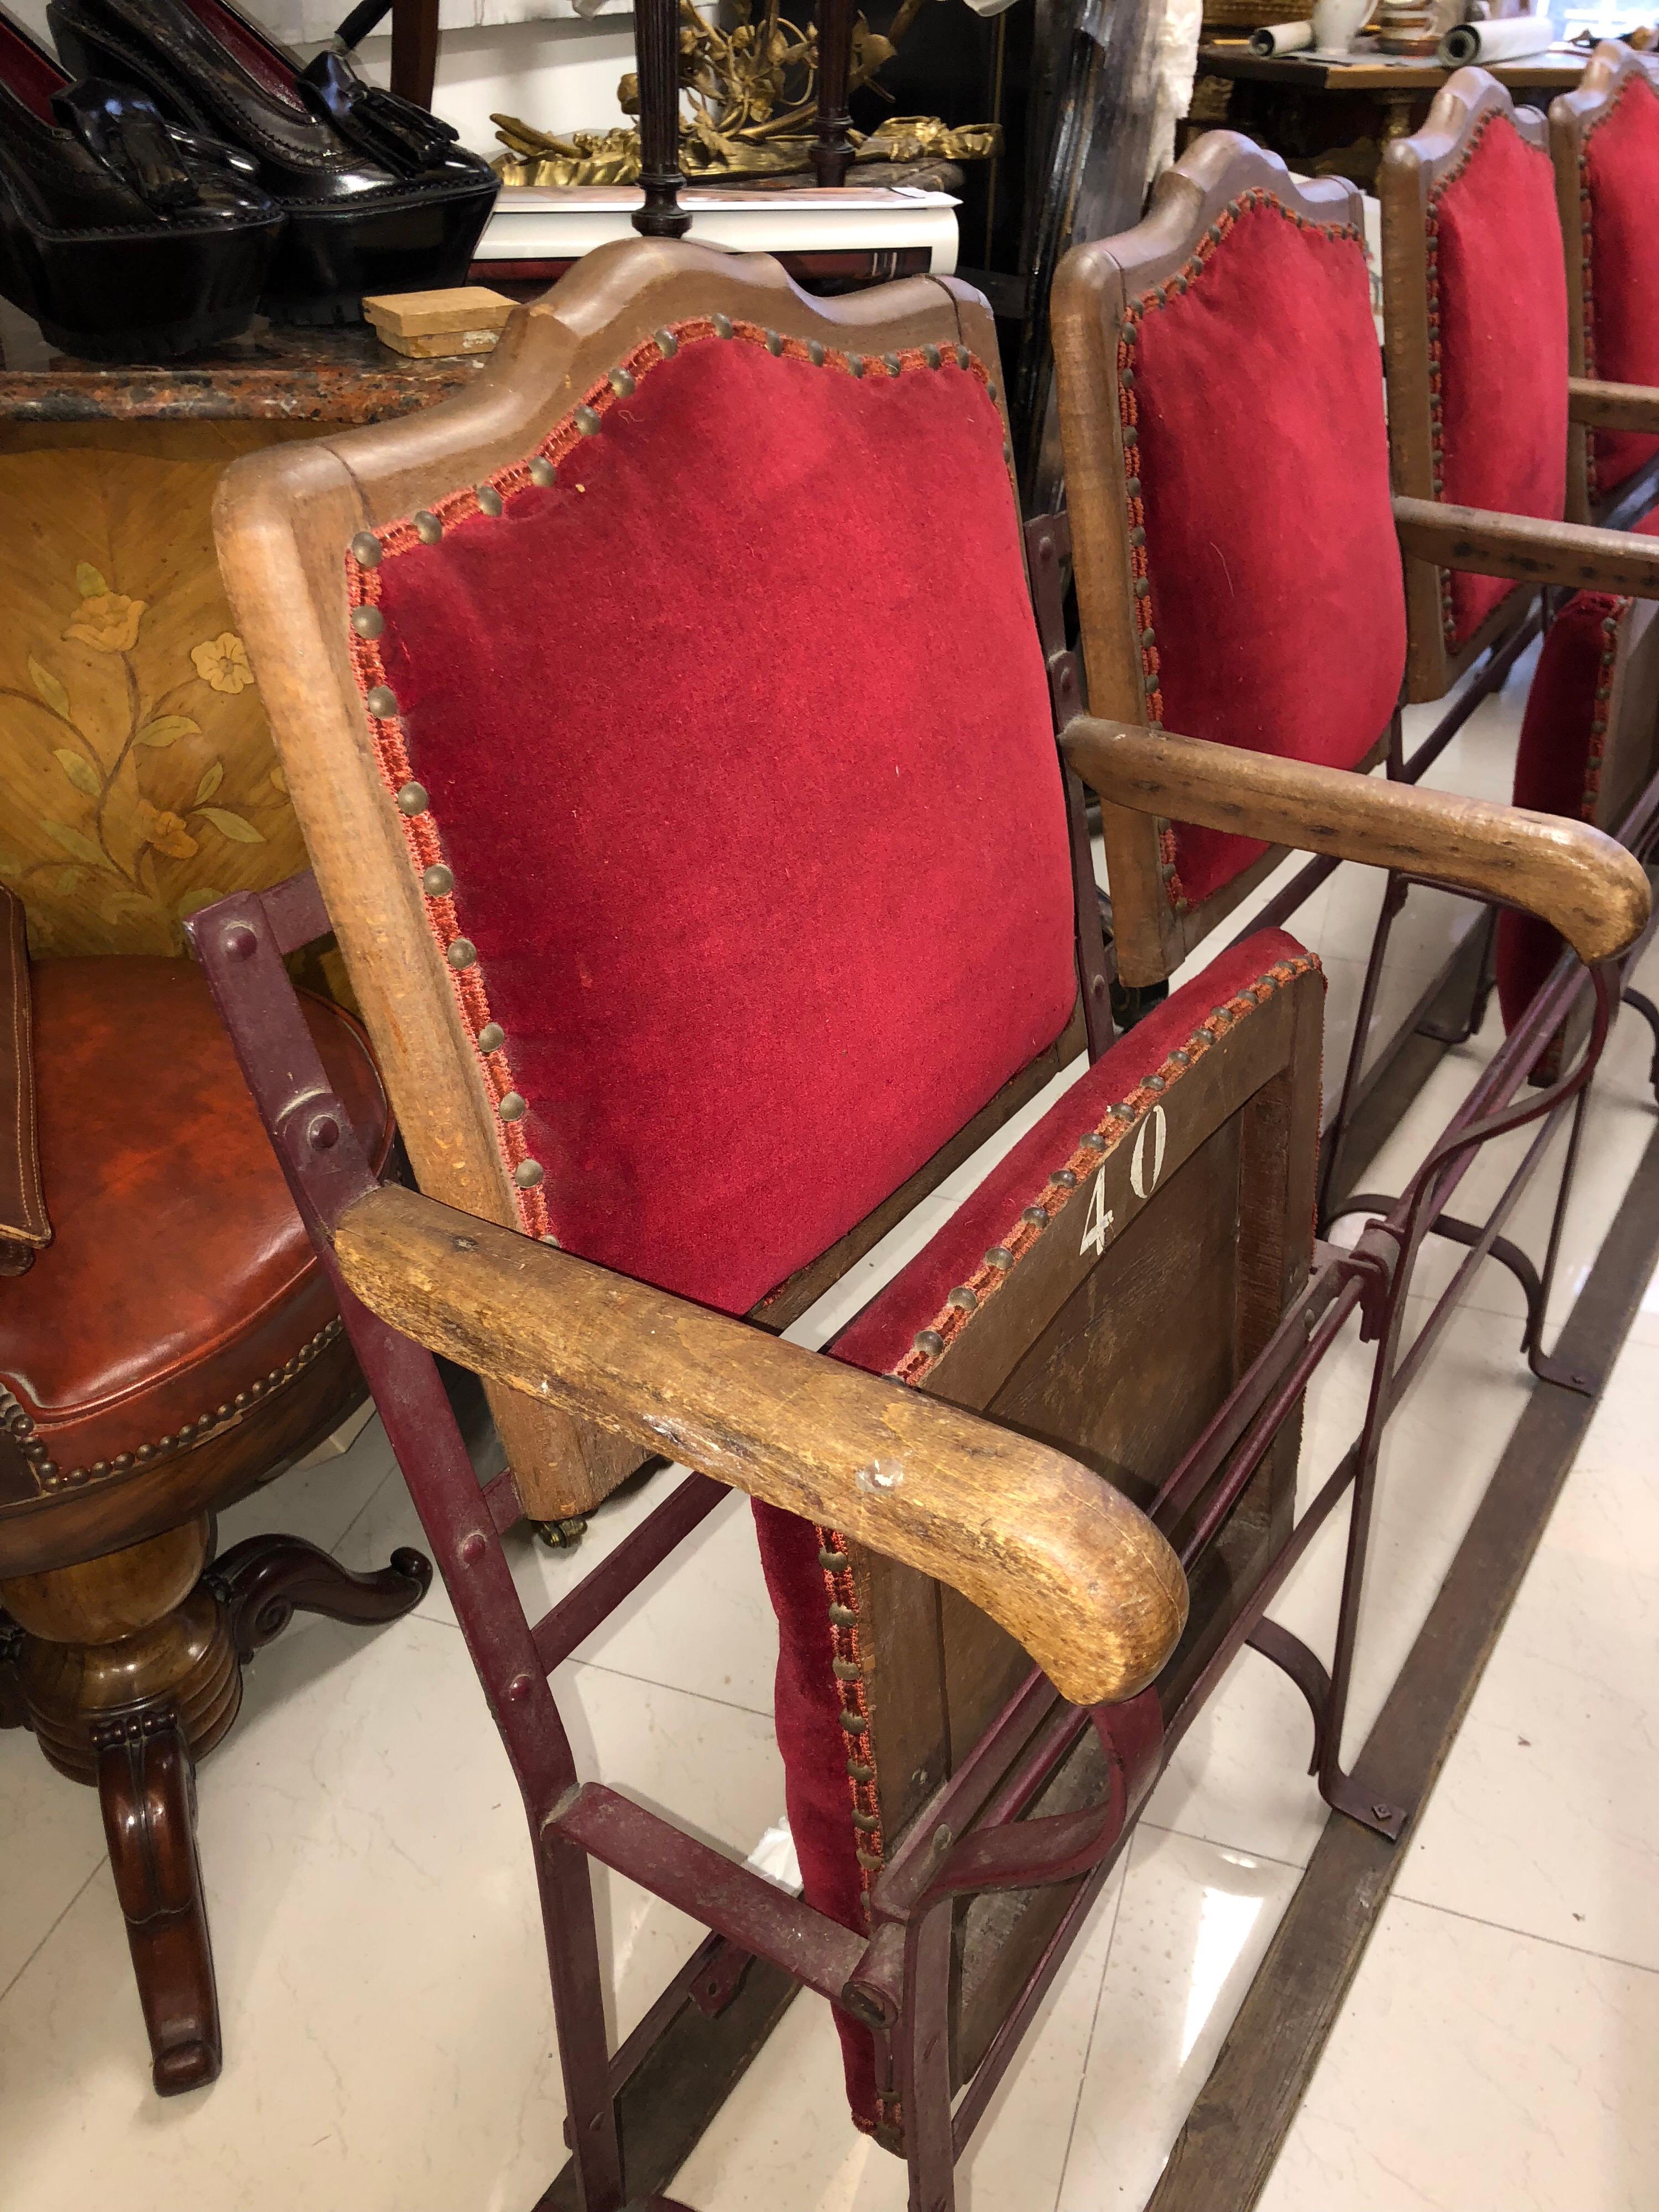 Viersitzige Kinosessel aus Holz und Metall mit kippbaren Sitzen, gepolstert mit rotem Samt. Maße: Breite 196 cm
Frankreich, um 1920.